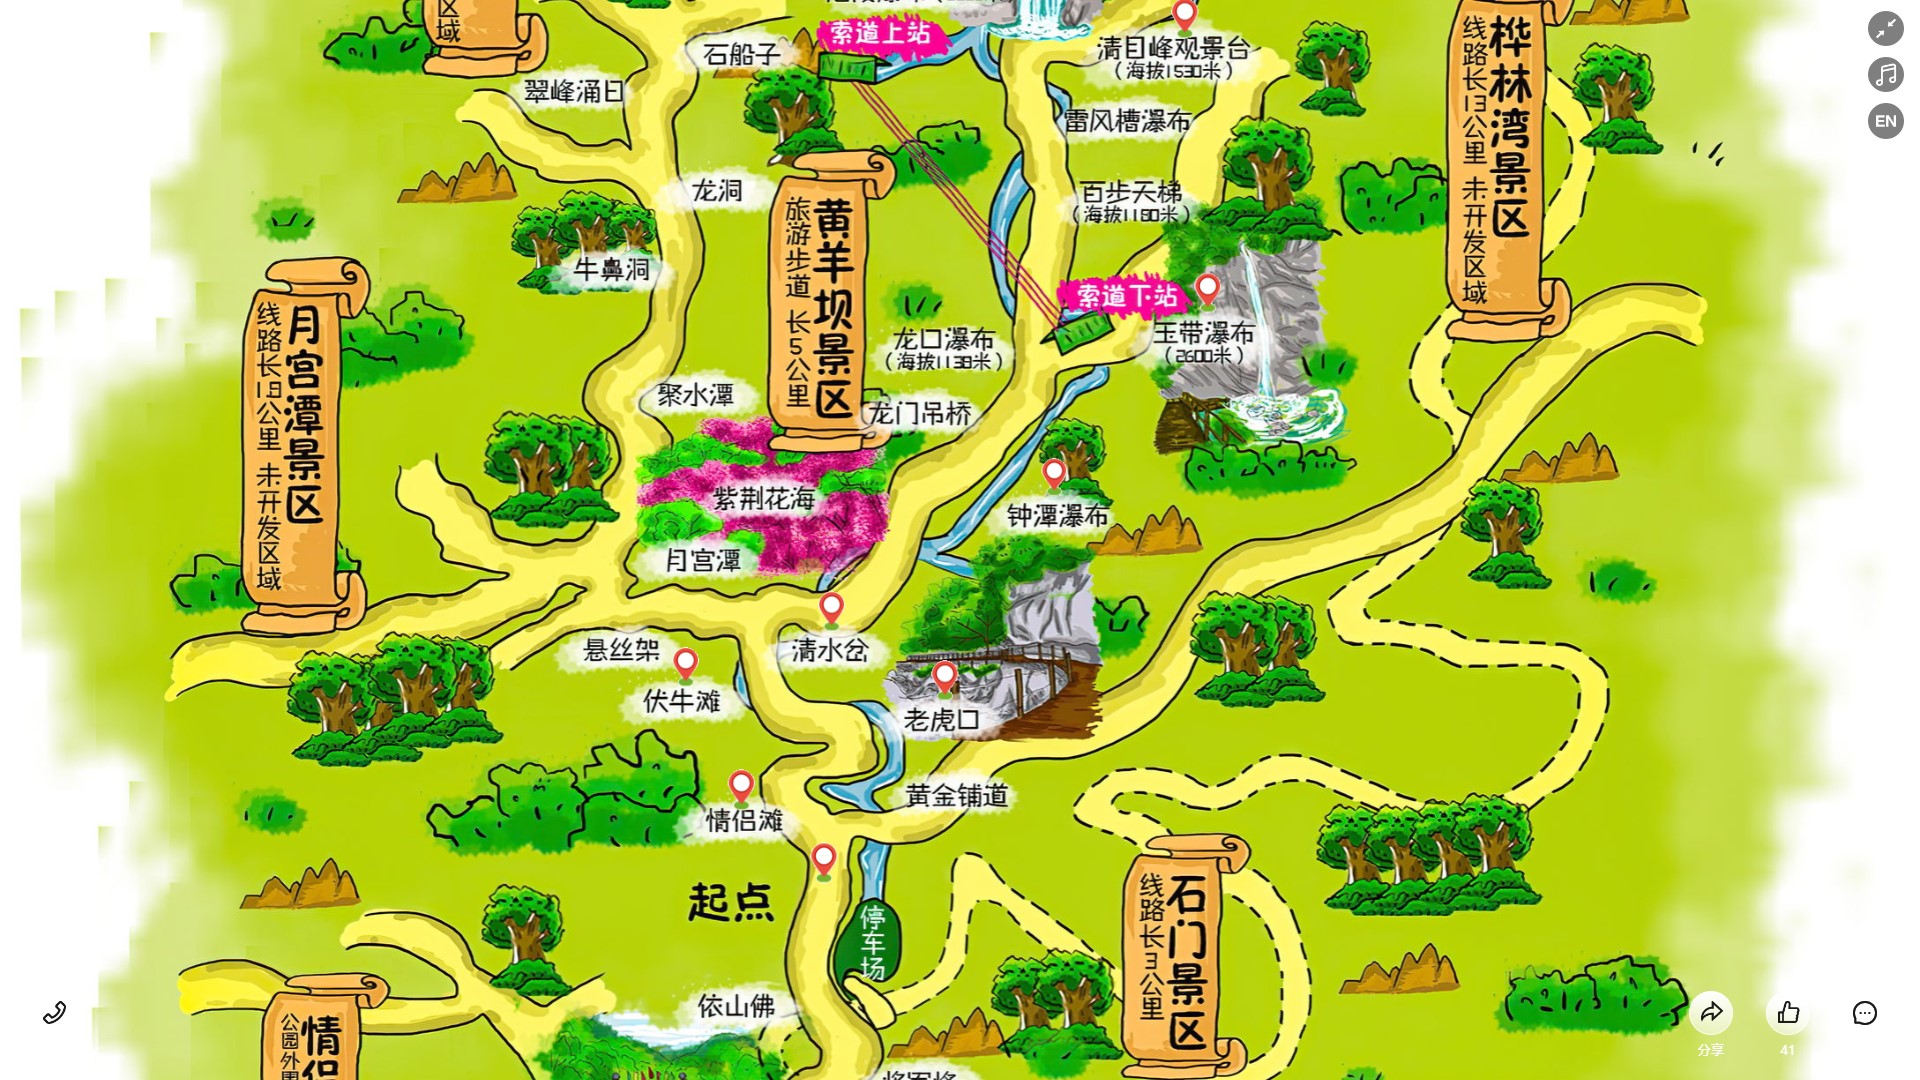 渭城景区导览系统